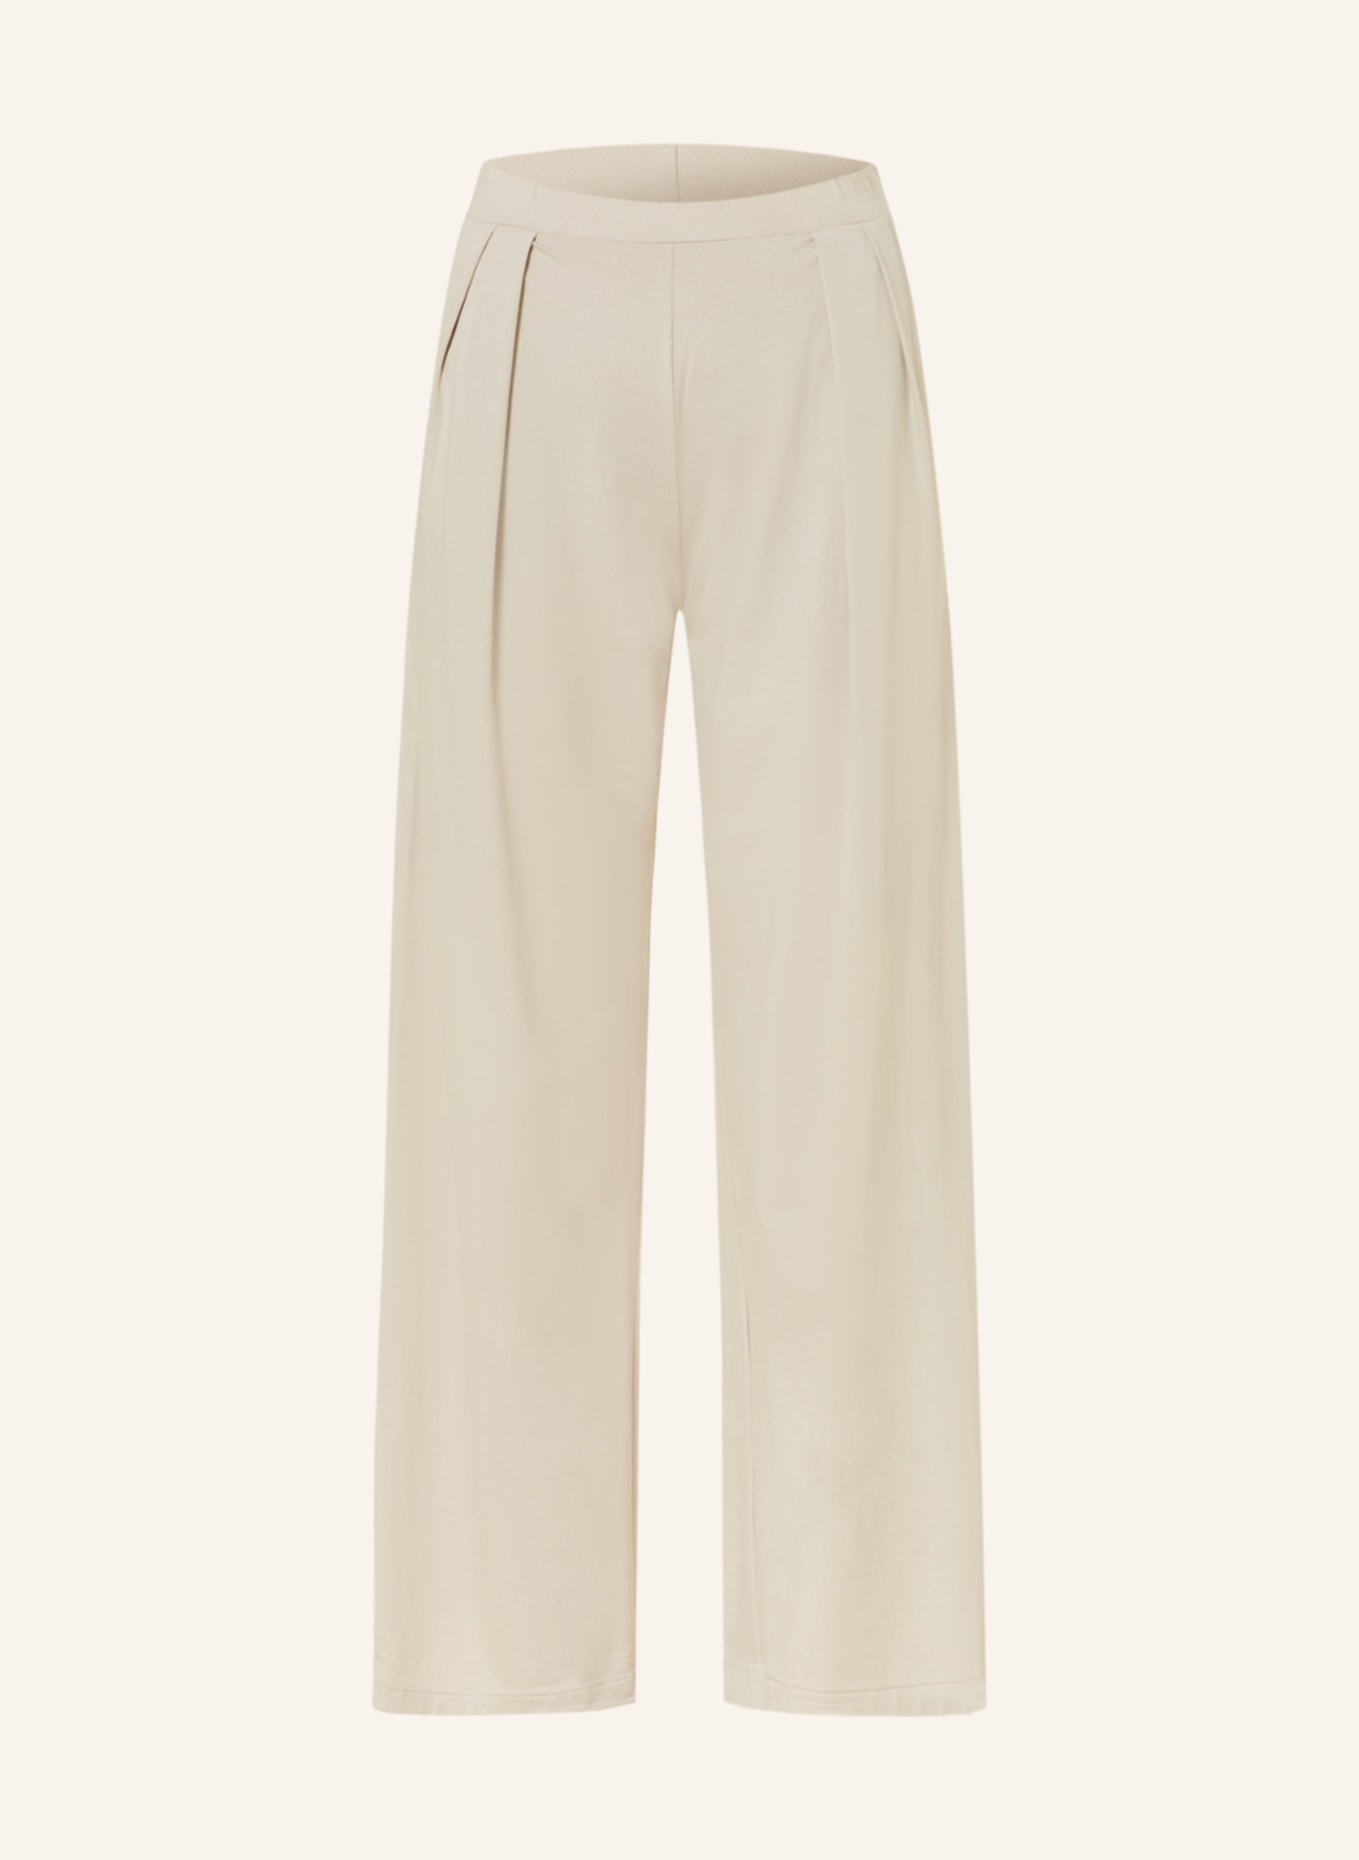 zimmerli Pajama pants PURENESS, Color: LIGHT BROWN (Image 1)